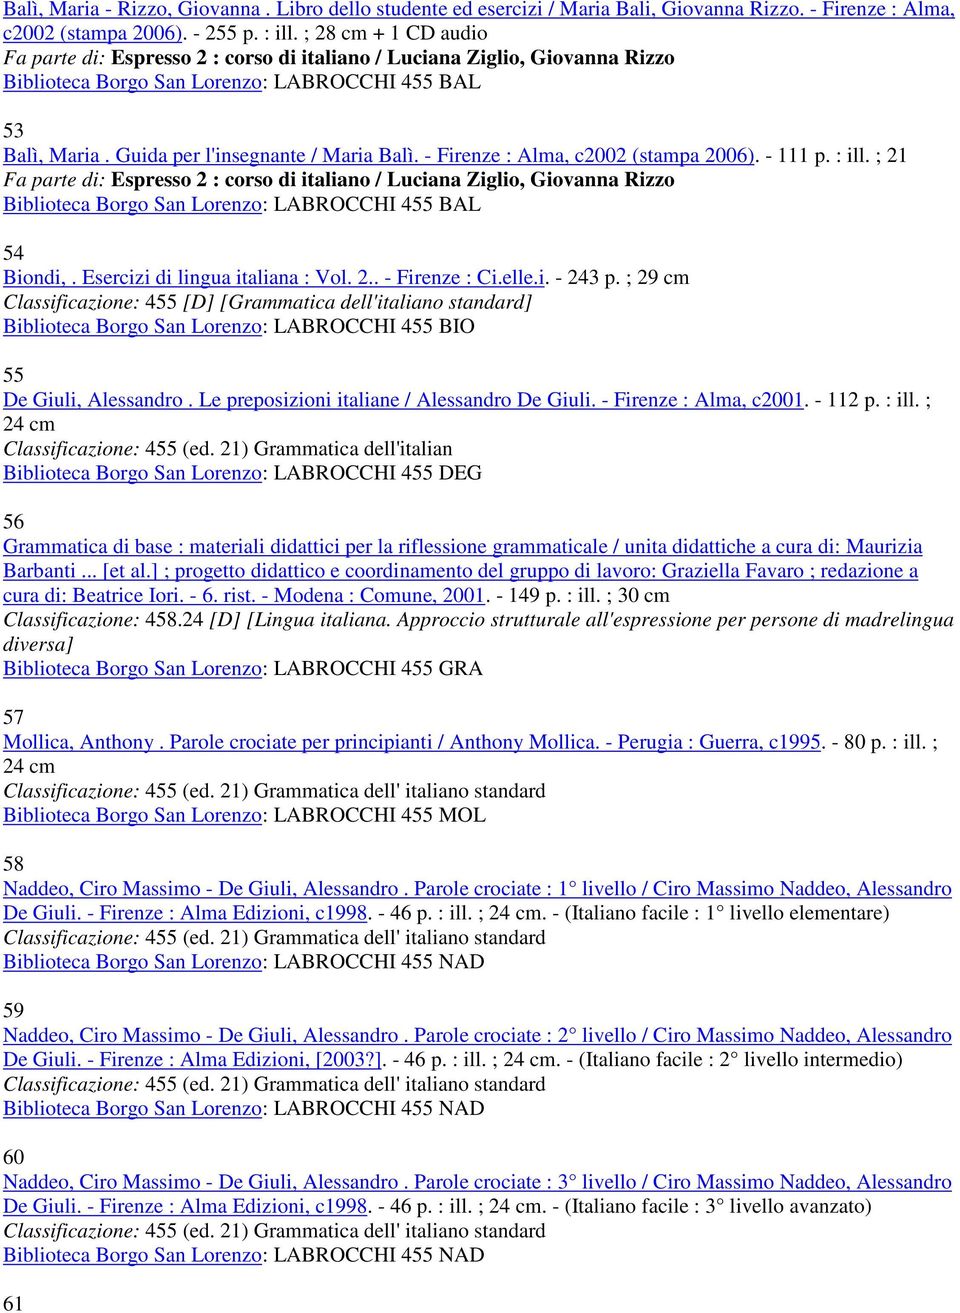 - Firenze : Alma, c2002 (stampa 2006). - 111 p. : ill. ; 21 Fa parte di: Espresso 2 : corso di italiano / Luciana Ziglio, Giovanna Rizzo Biblioteca Borgo San Lorenzo: LABROCCHI 455 BAL 54 Biondi,.